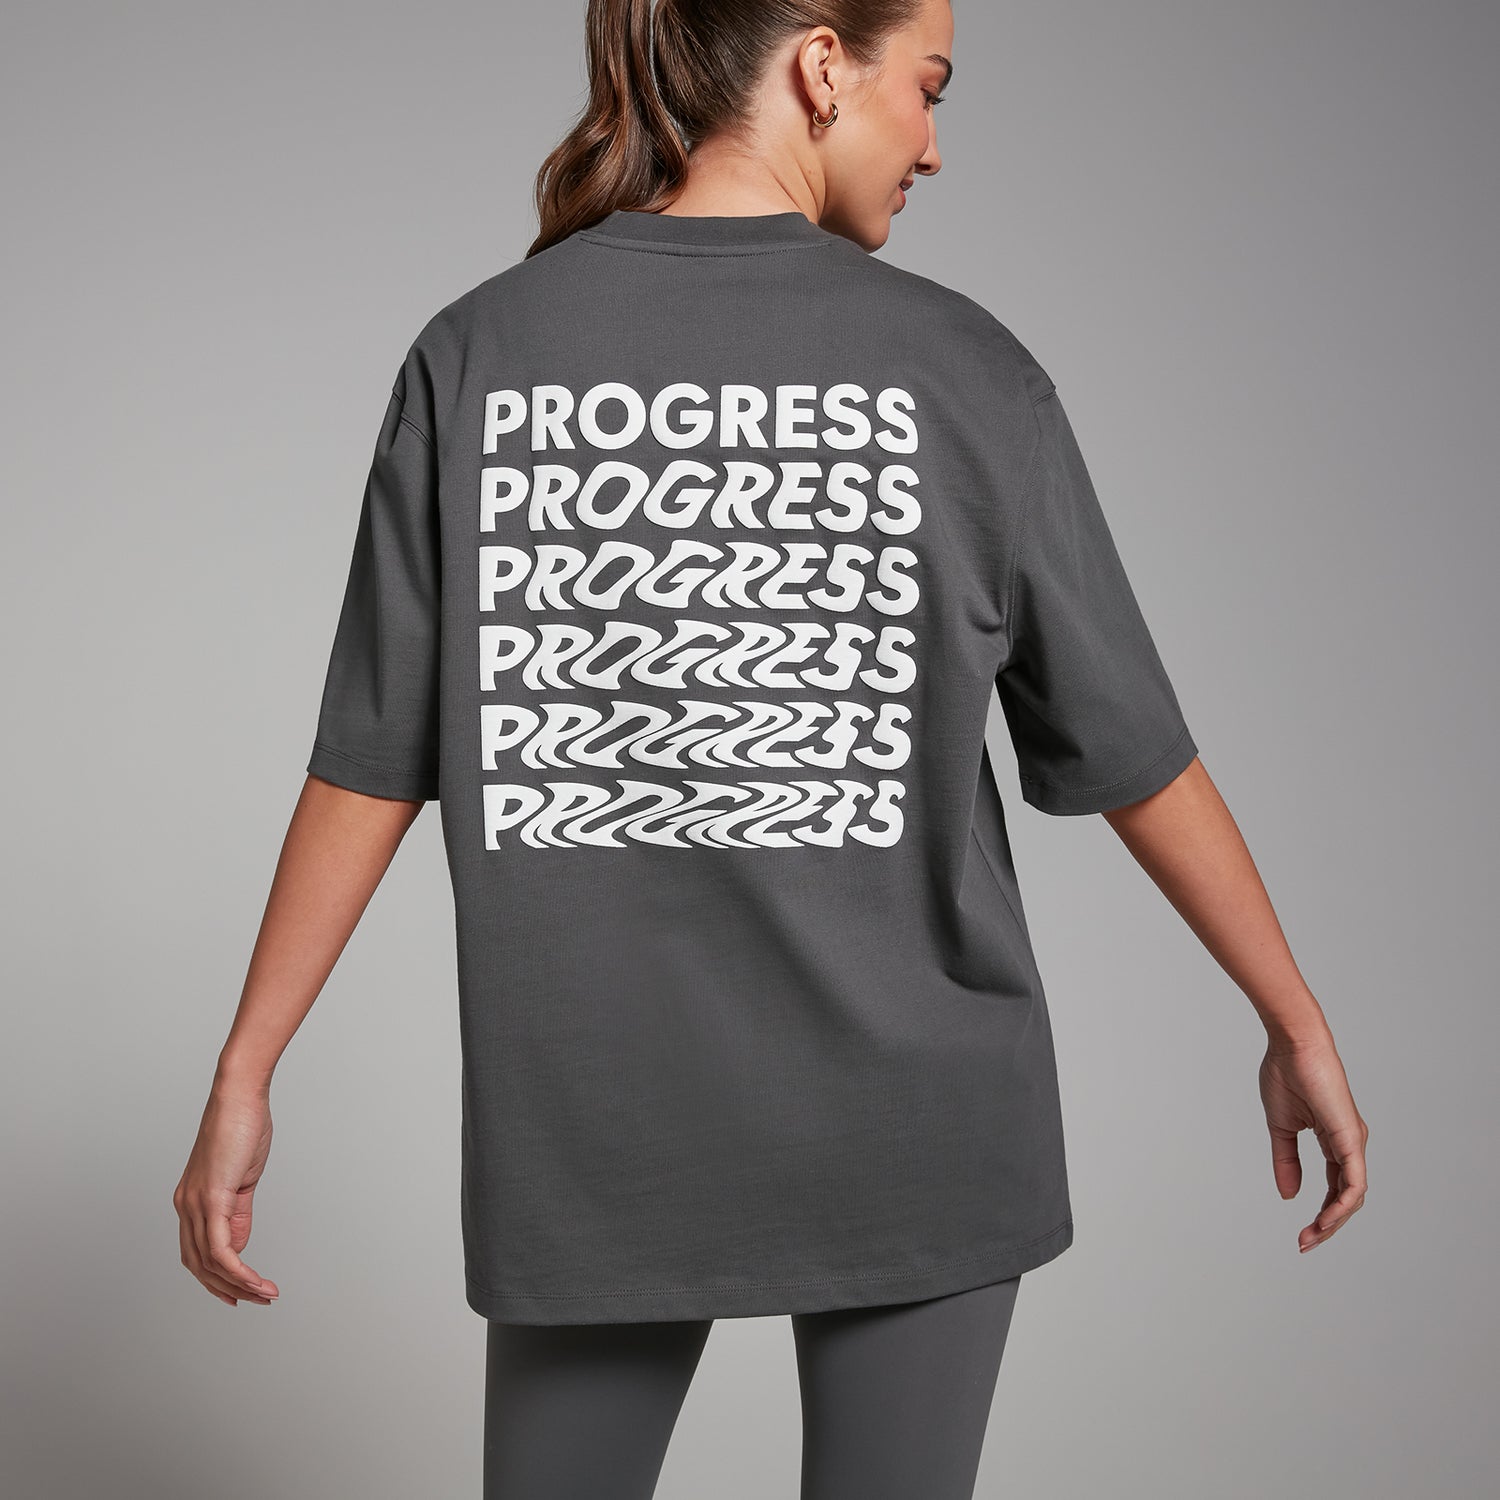 MP女士Tempo系列Progress T恤 - 暗影 - XS